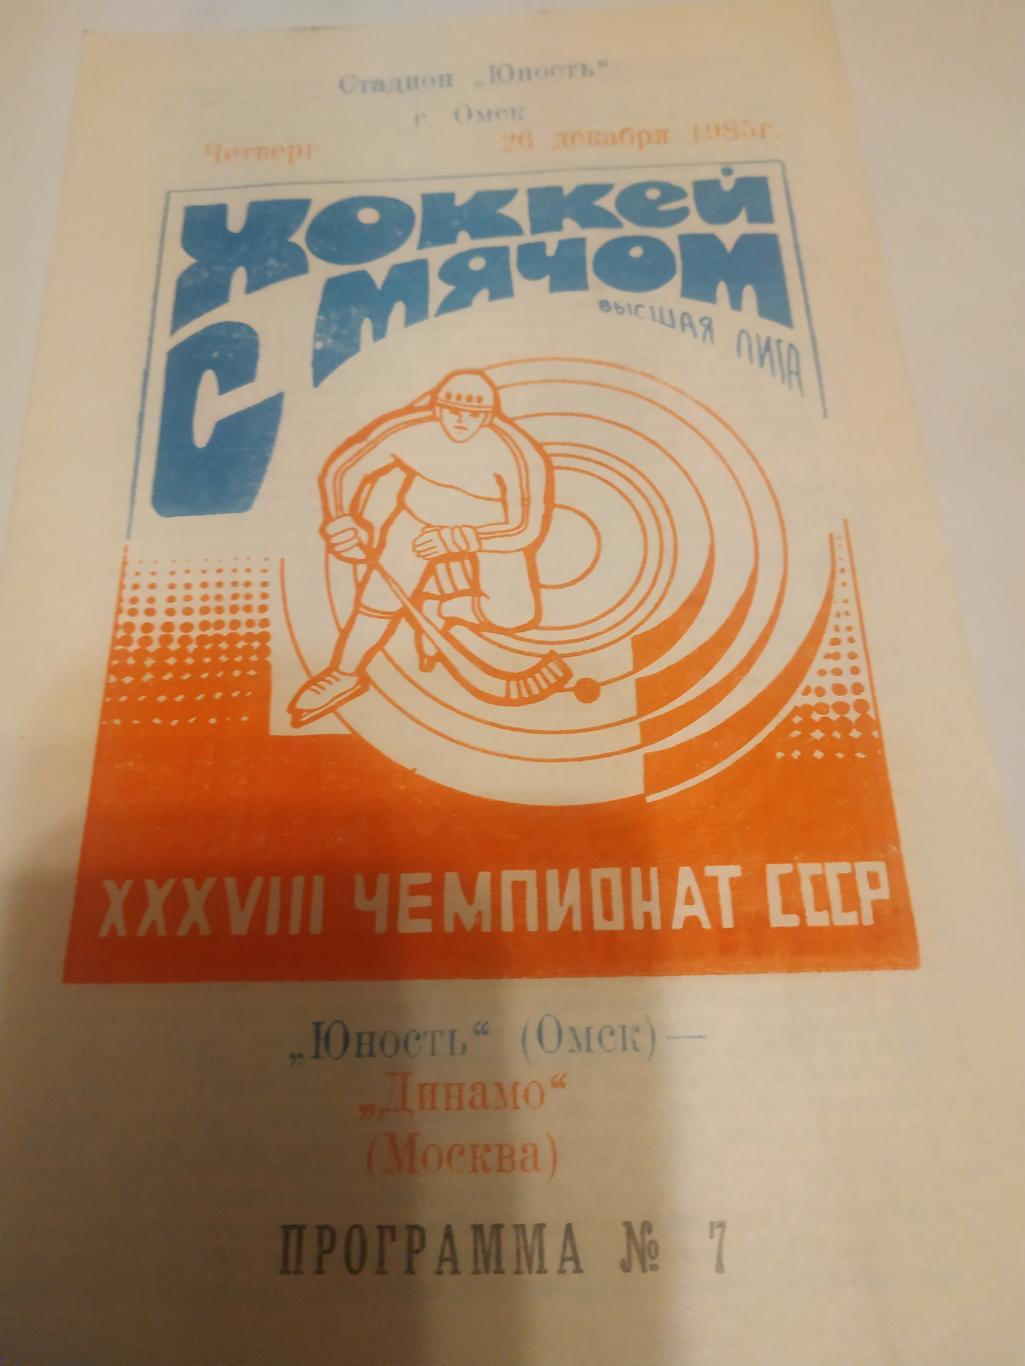 Юность (Омск) - Динамо (Москва). 36.12.1985. .